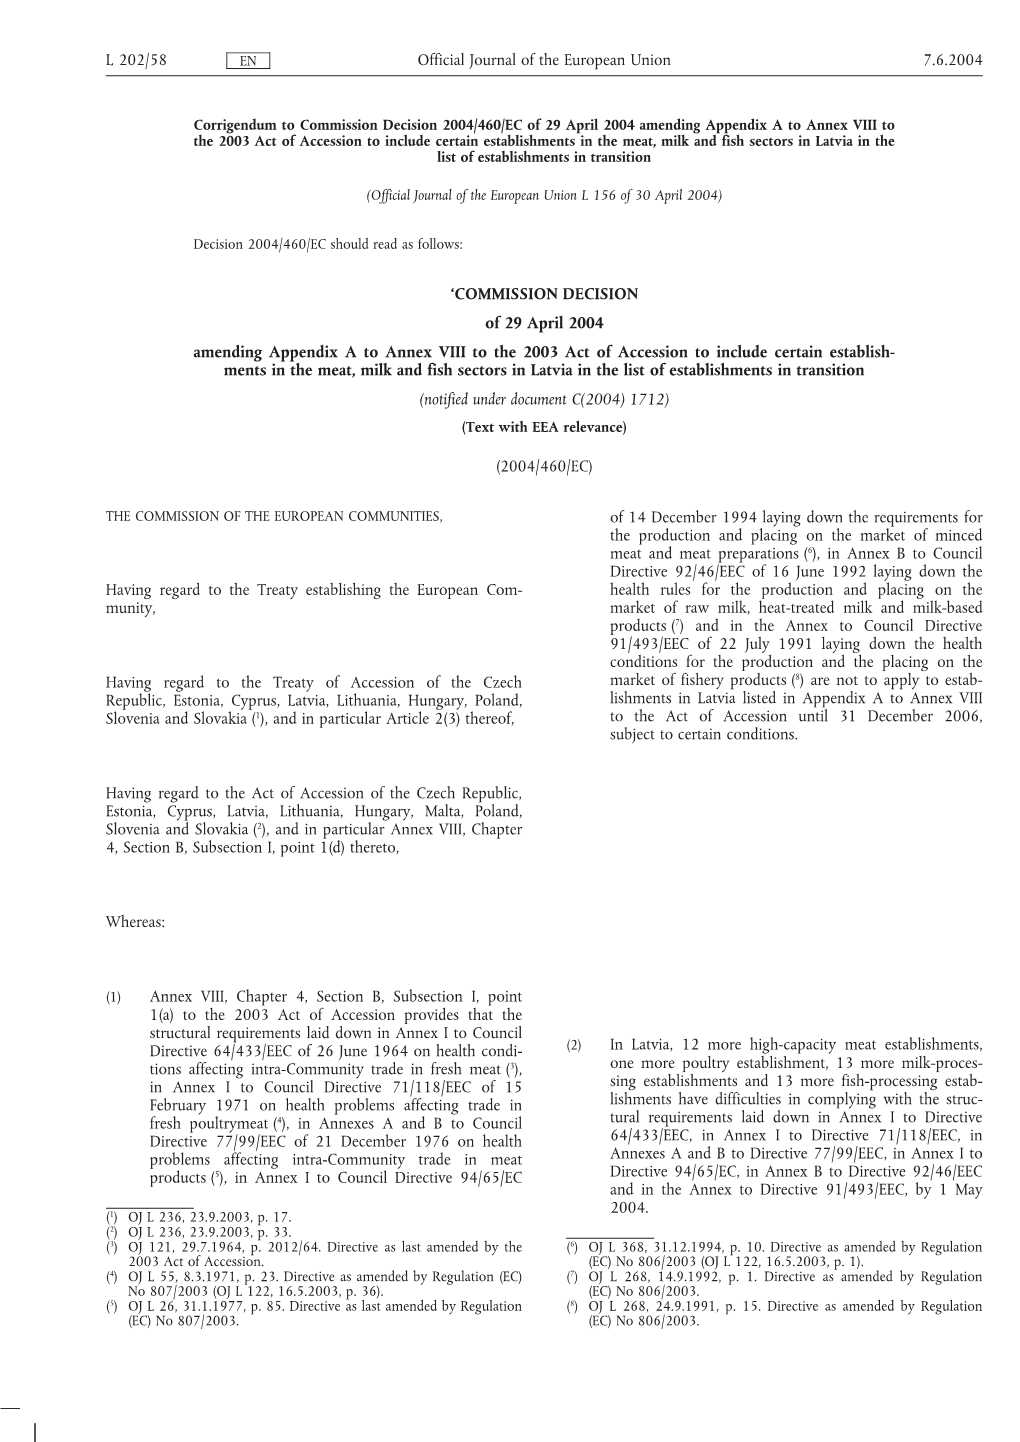 COMMISSION DECISION of 29 April 2004 Amending